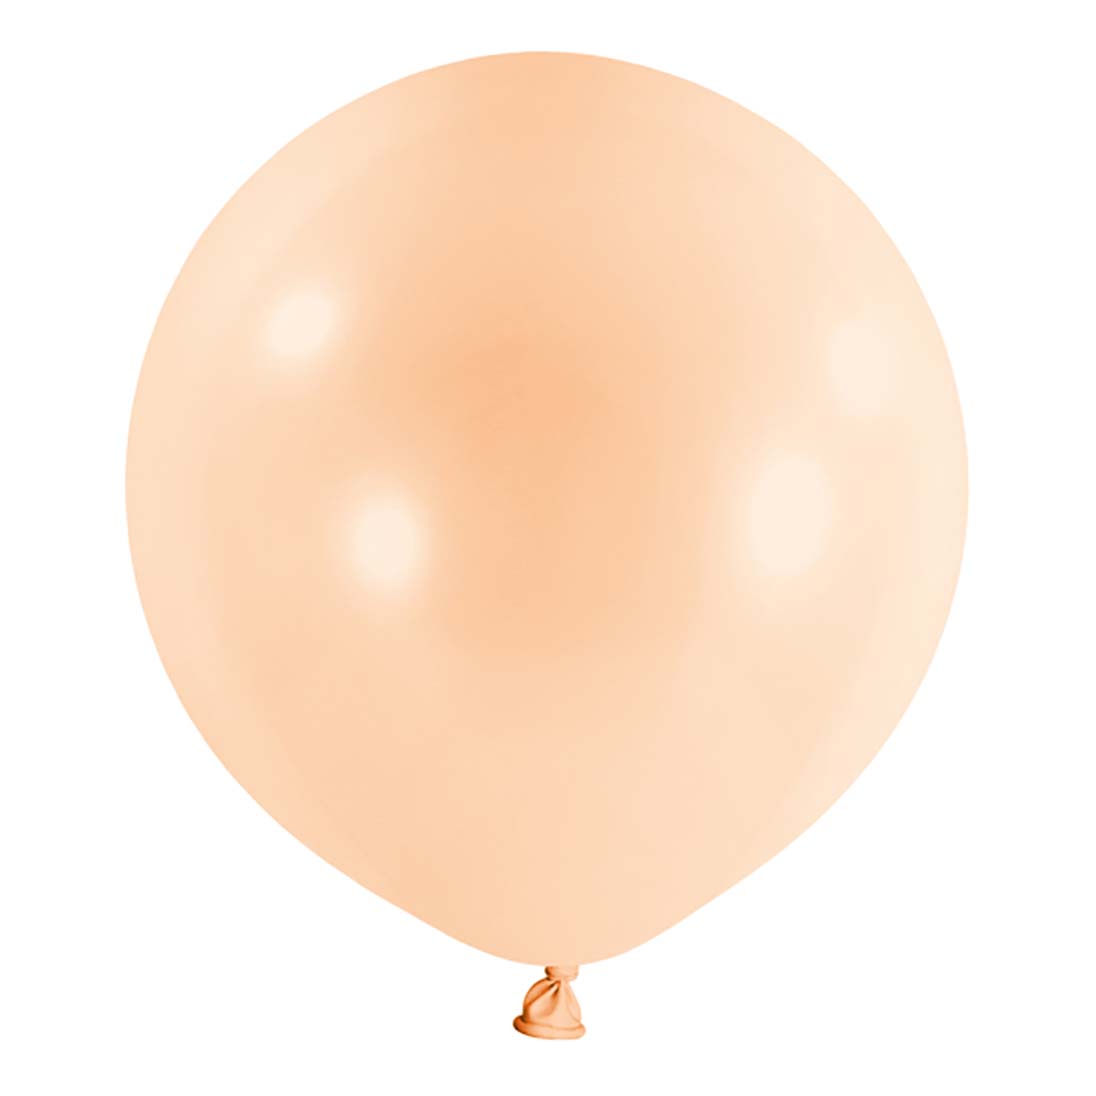 Peach Macaron Latex Balloon 24in 4pcs